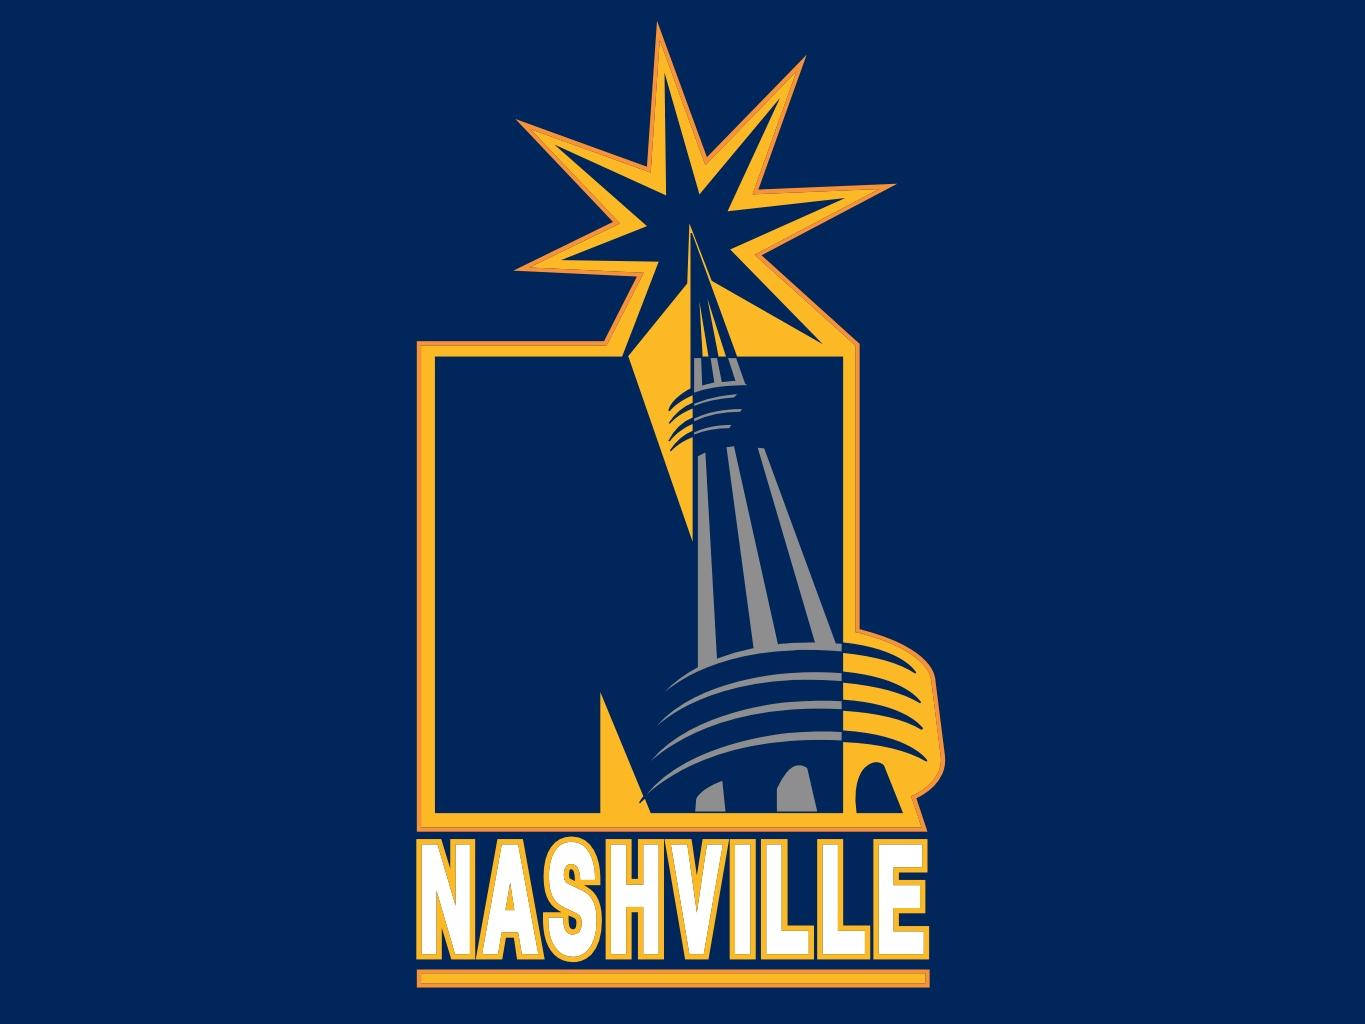 Nashville Predators Tower Background